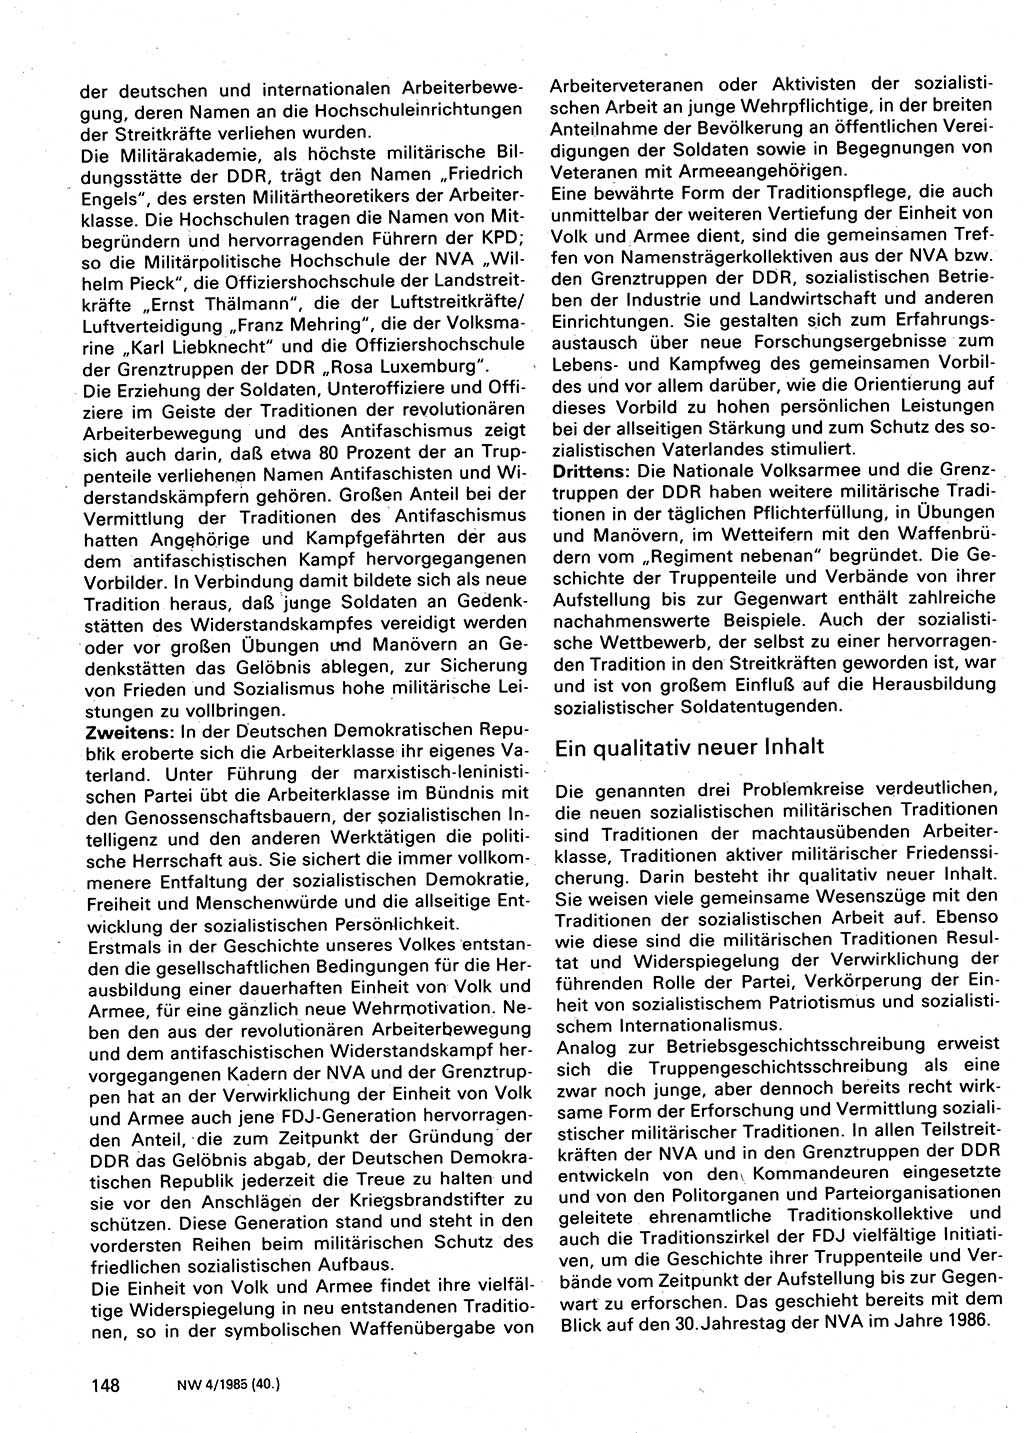 Neuer Weg (NW), Organ des Zentralkomitees (ZK) der SED (Sozialistische Einheitspartei Deutschlands) für Fragen des Parteilebens, 40. Jahrgang [Deutsche Demokratische Republik (DDR)] 1985, Seite 148 (NW ZK SED DDR 1985, S. 148)